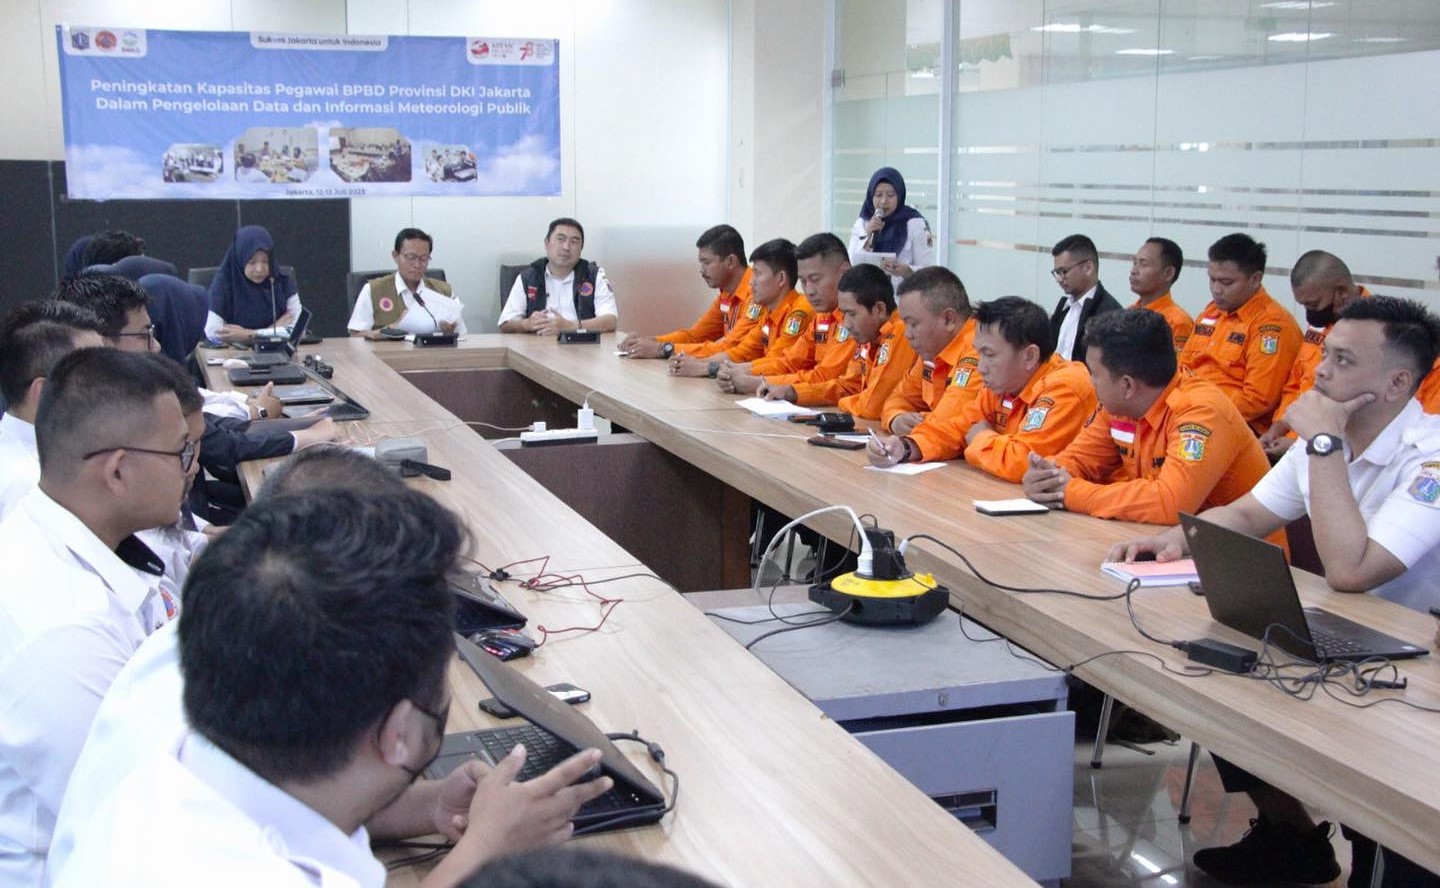 Peningkatan Kapasitas Pegawai BPBD Provinsi DKI Jakarta dalam Pengelolaan Data dan Informasi Meteorologi Publik oleh BMKG Hari Pertama